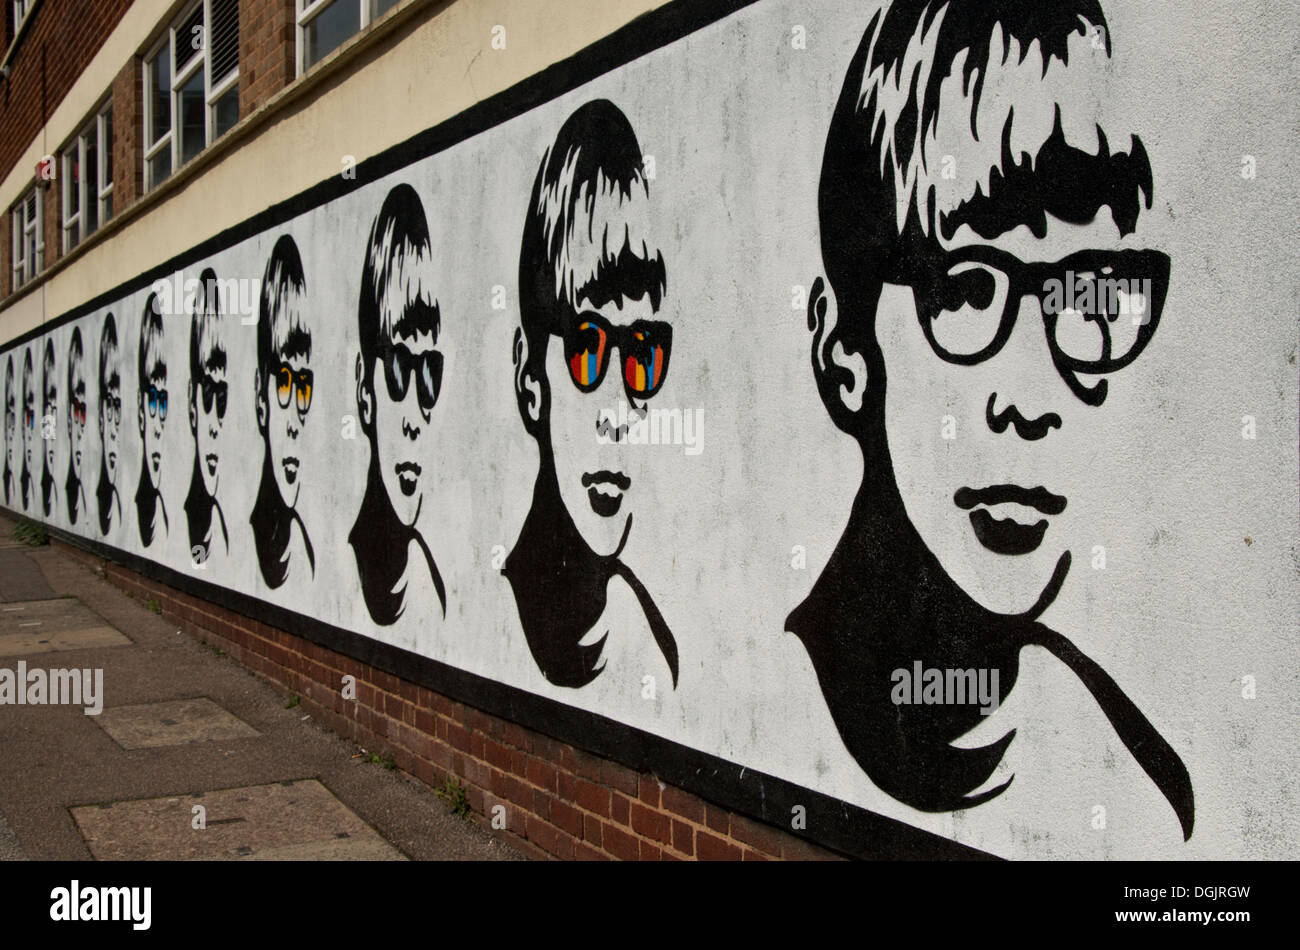 Street Art by Golden Boy in Lower Essex Street in the Digbeth area of Birmingham UK Stock Photo